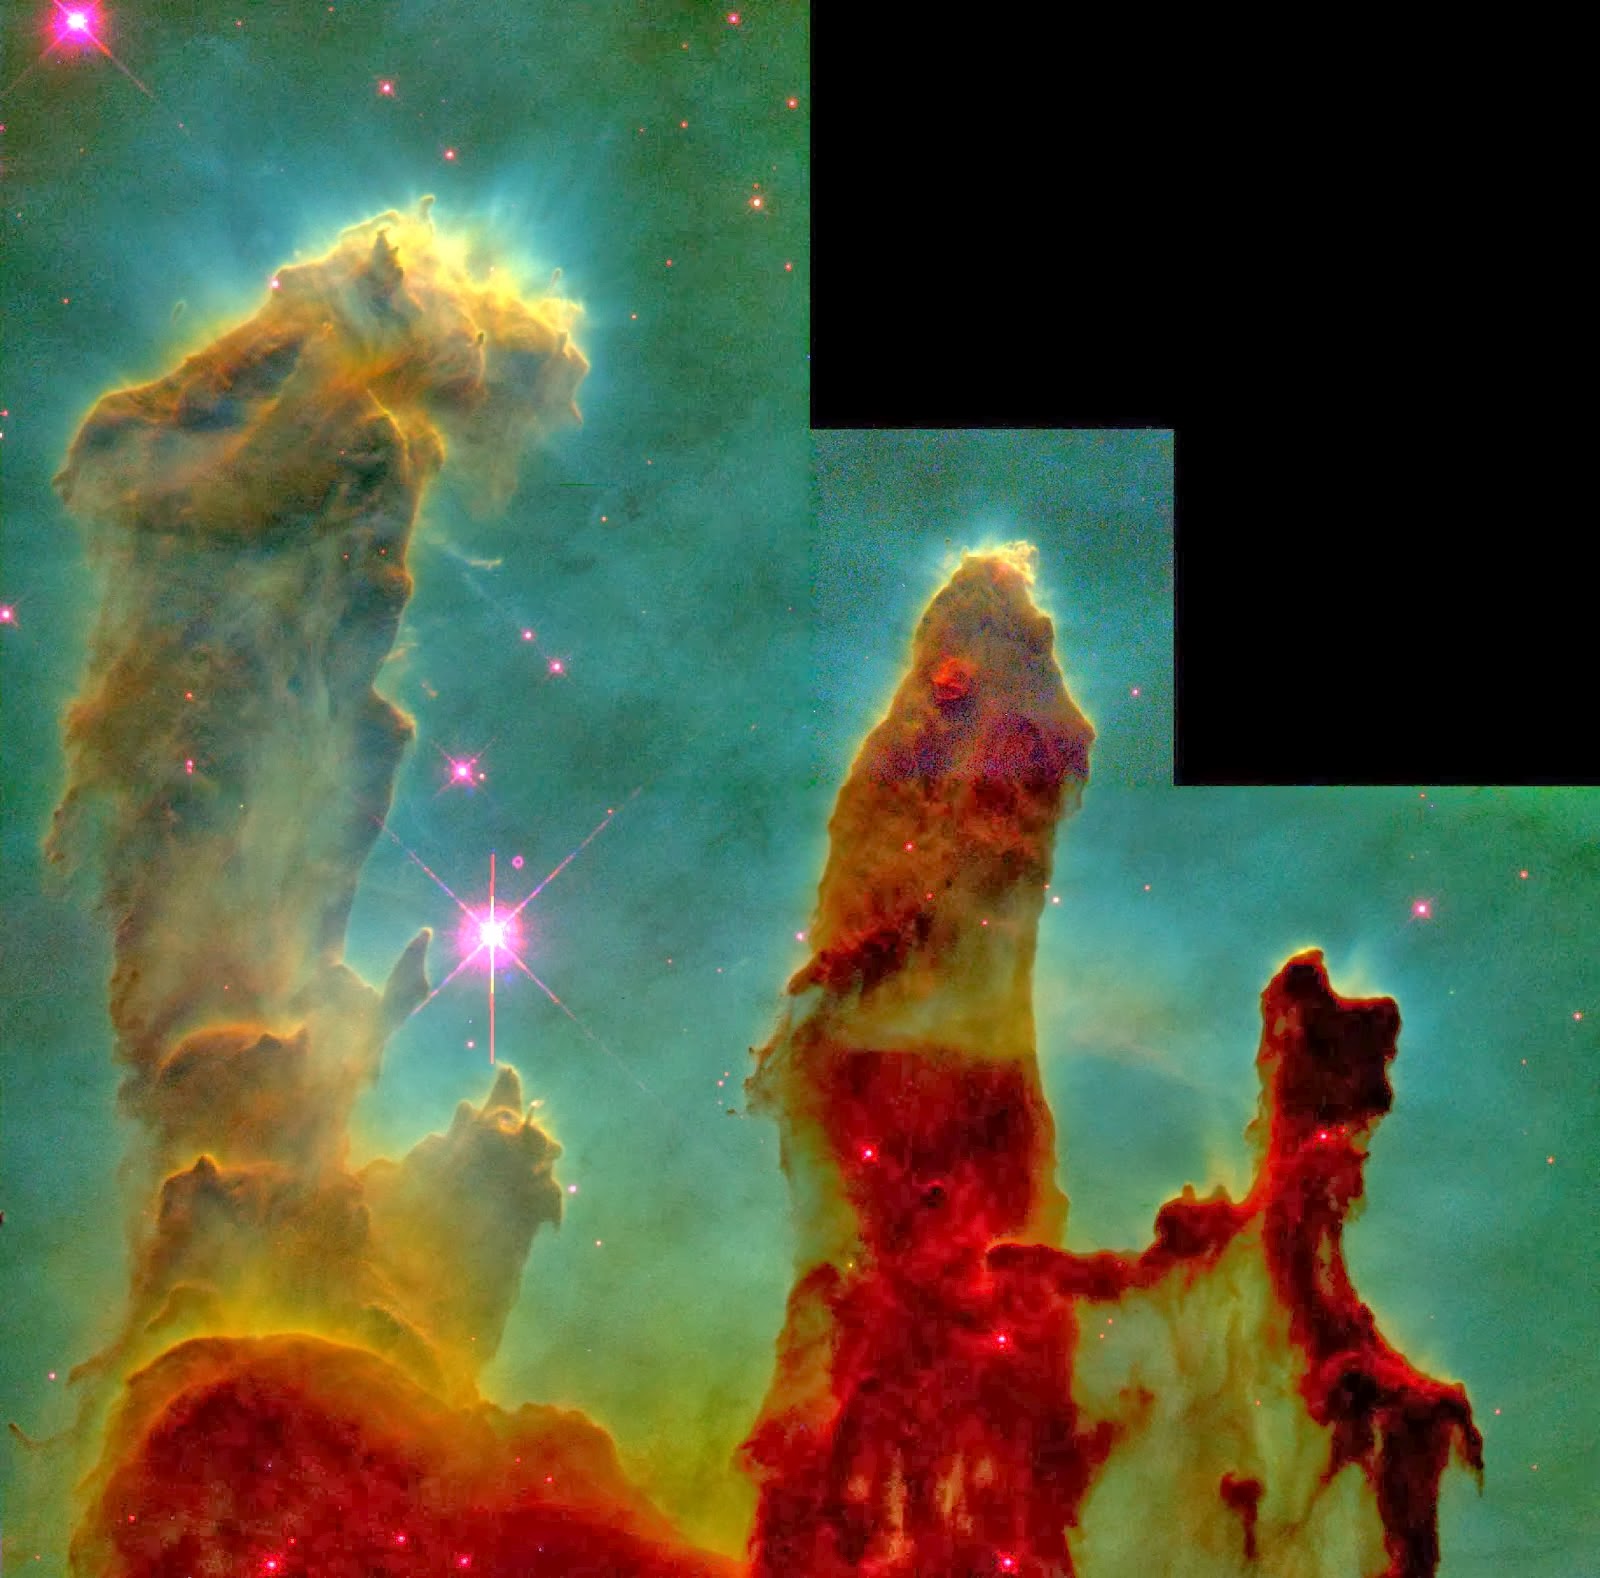 Os "Pilares da Criação" no interior da Nebulosa da Águia. http://hubblesite.org/newscenter/newsde